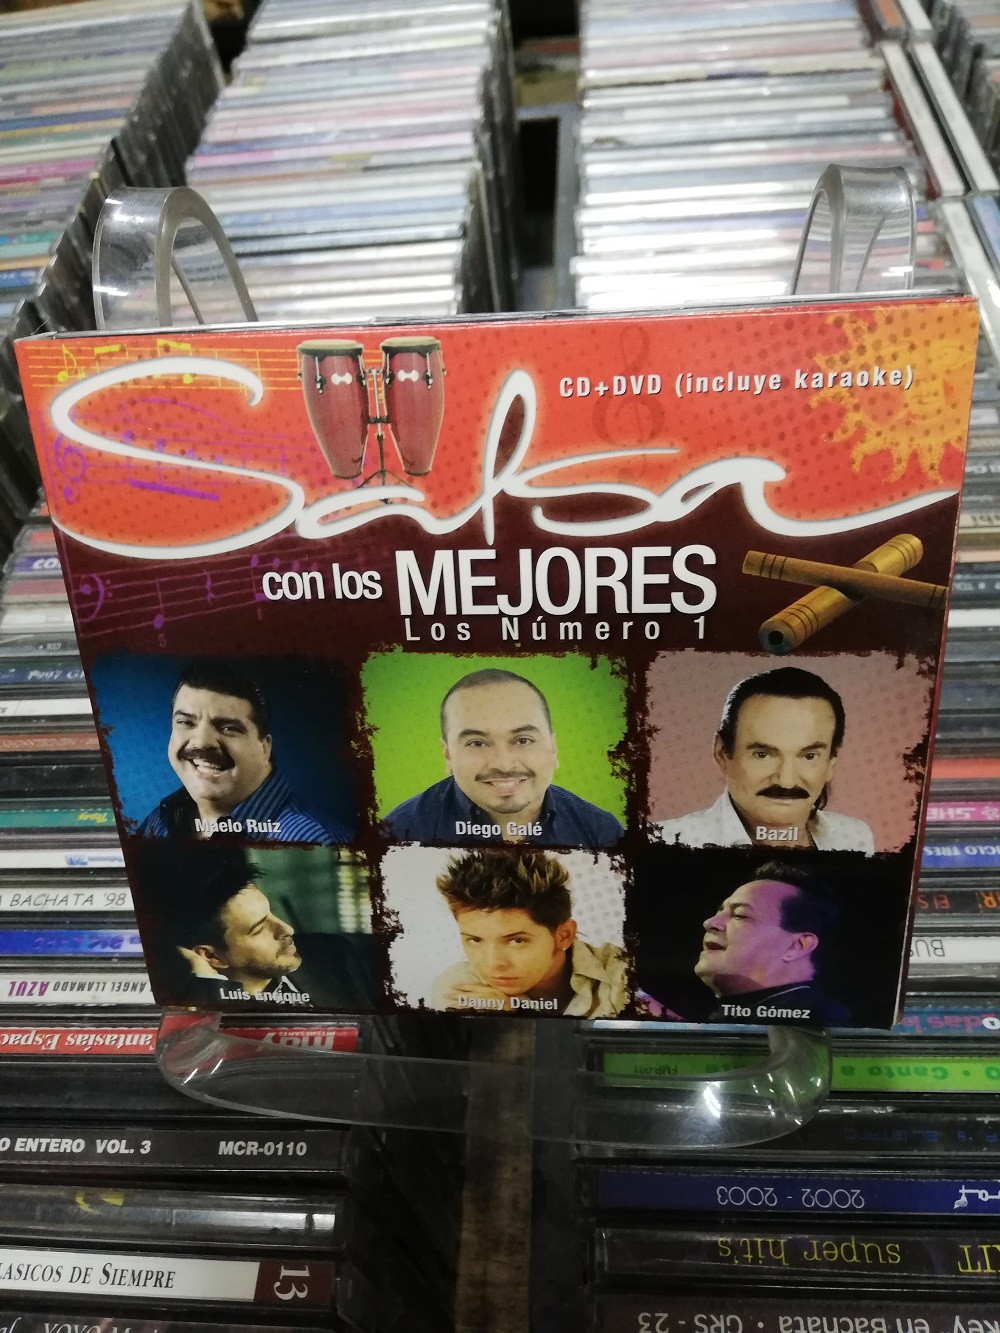 Imagen CD + DVD SALSA CON LOS MEJORES 1